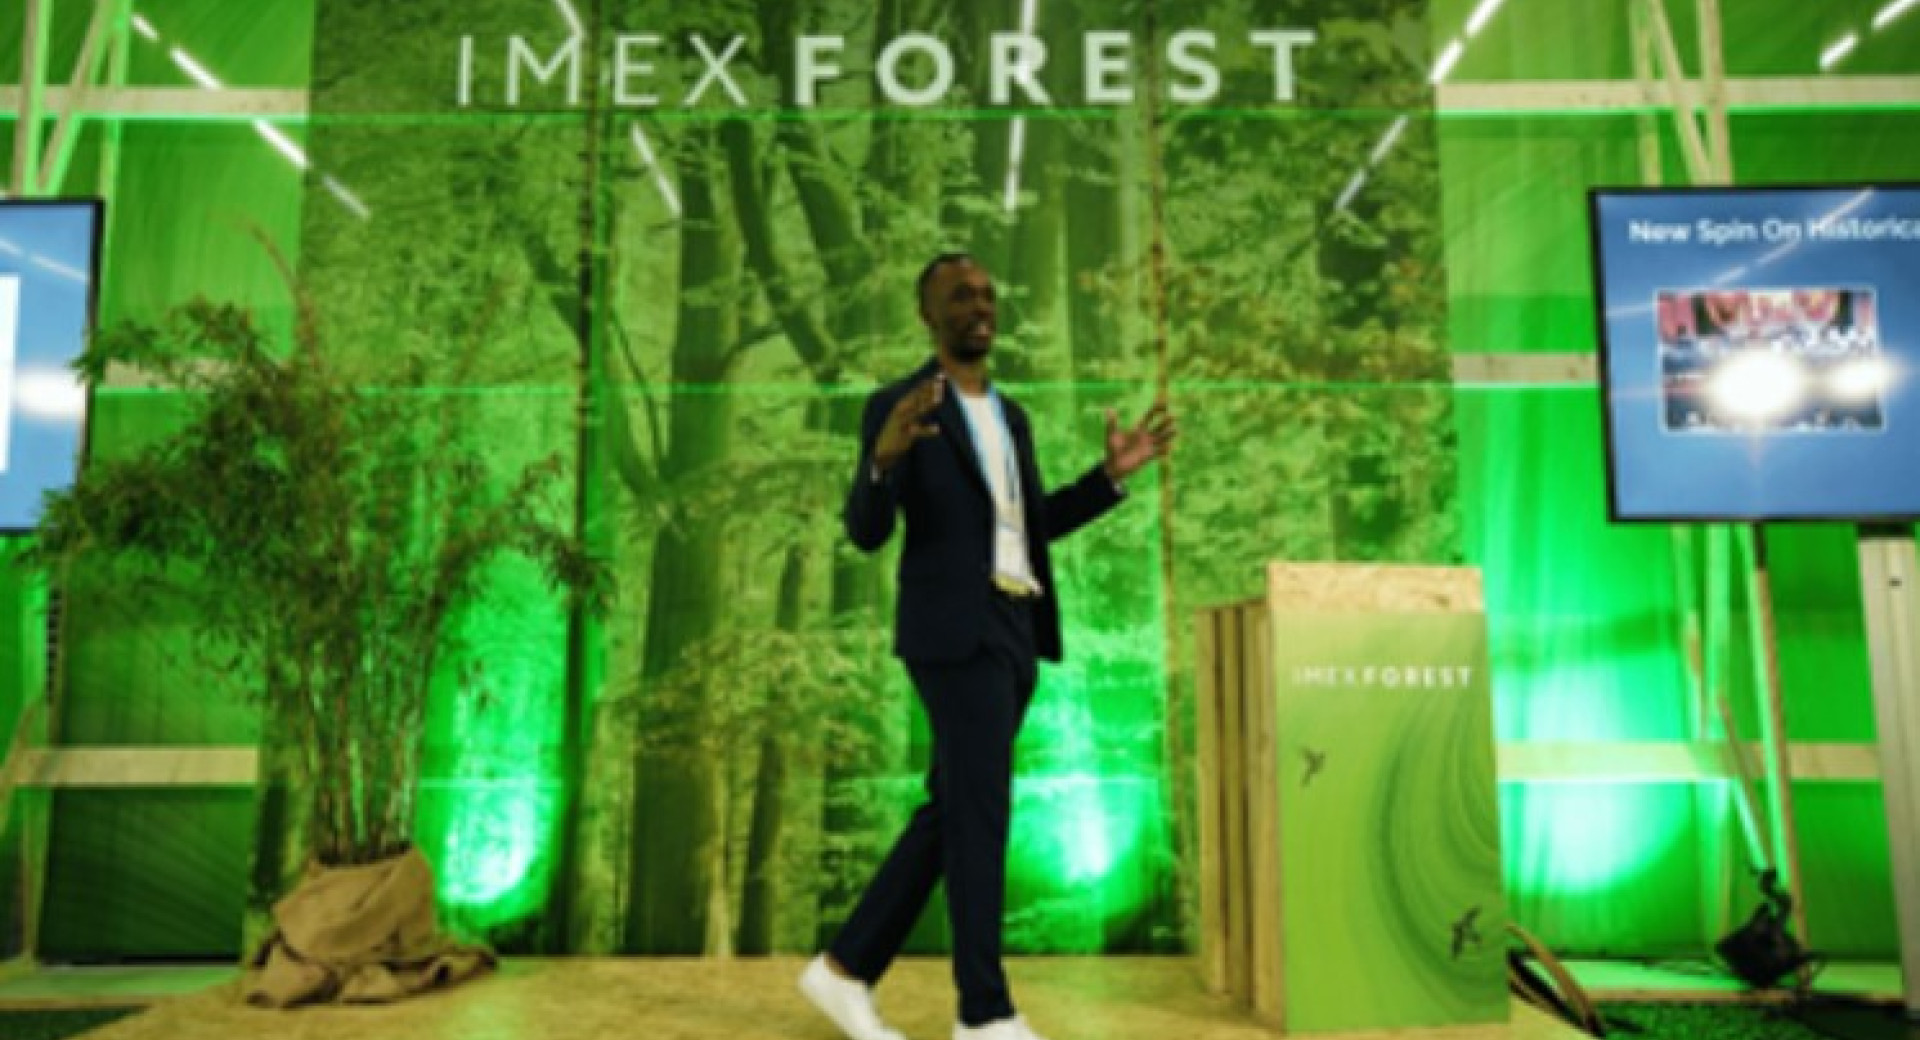 Svetovna poslovna borza IMEX Frankfurt 2022; predavatelj v zelenem okolju, ki imitira naravo